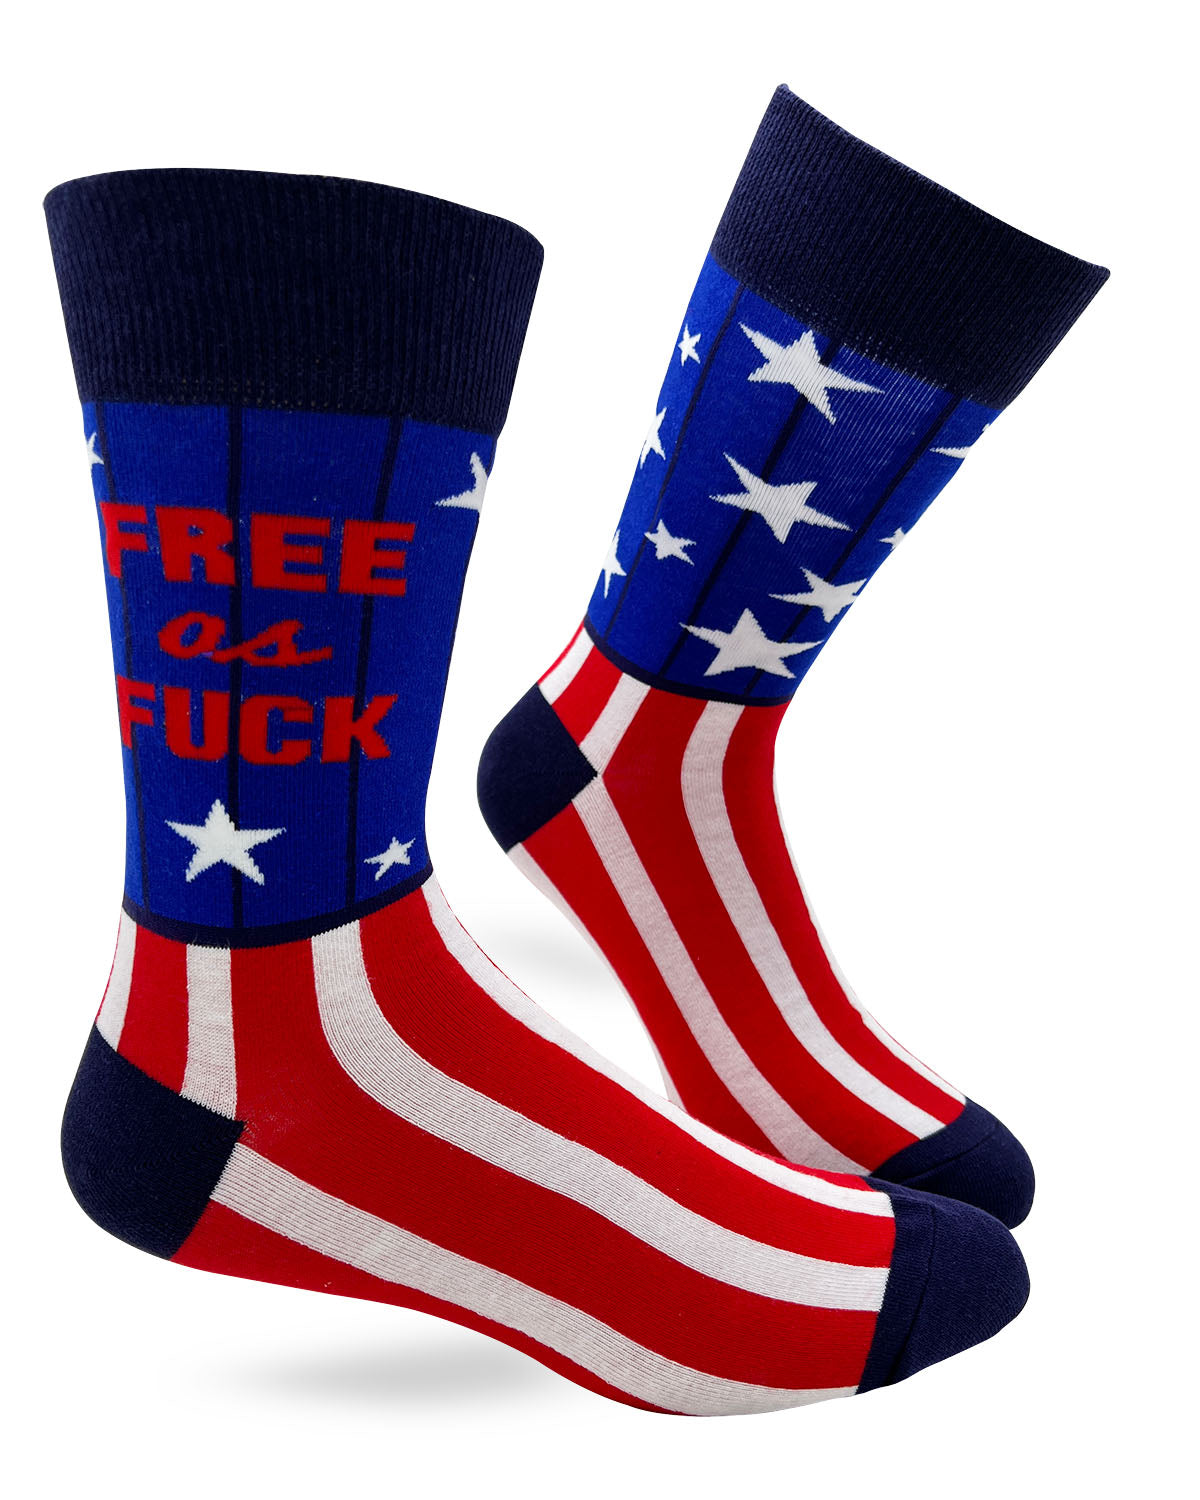 Free As Fuck Men's Novelty Crew Socks